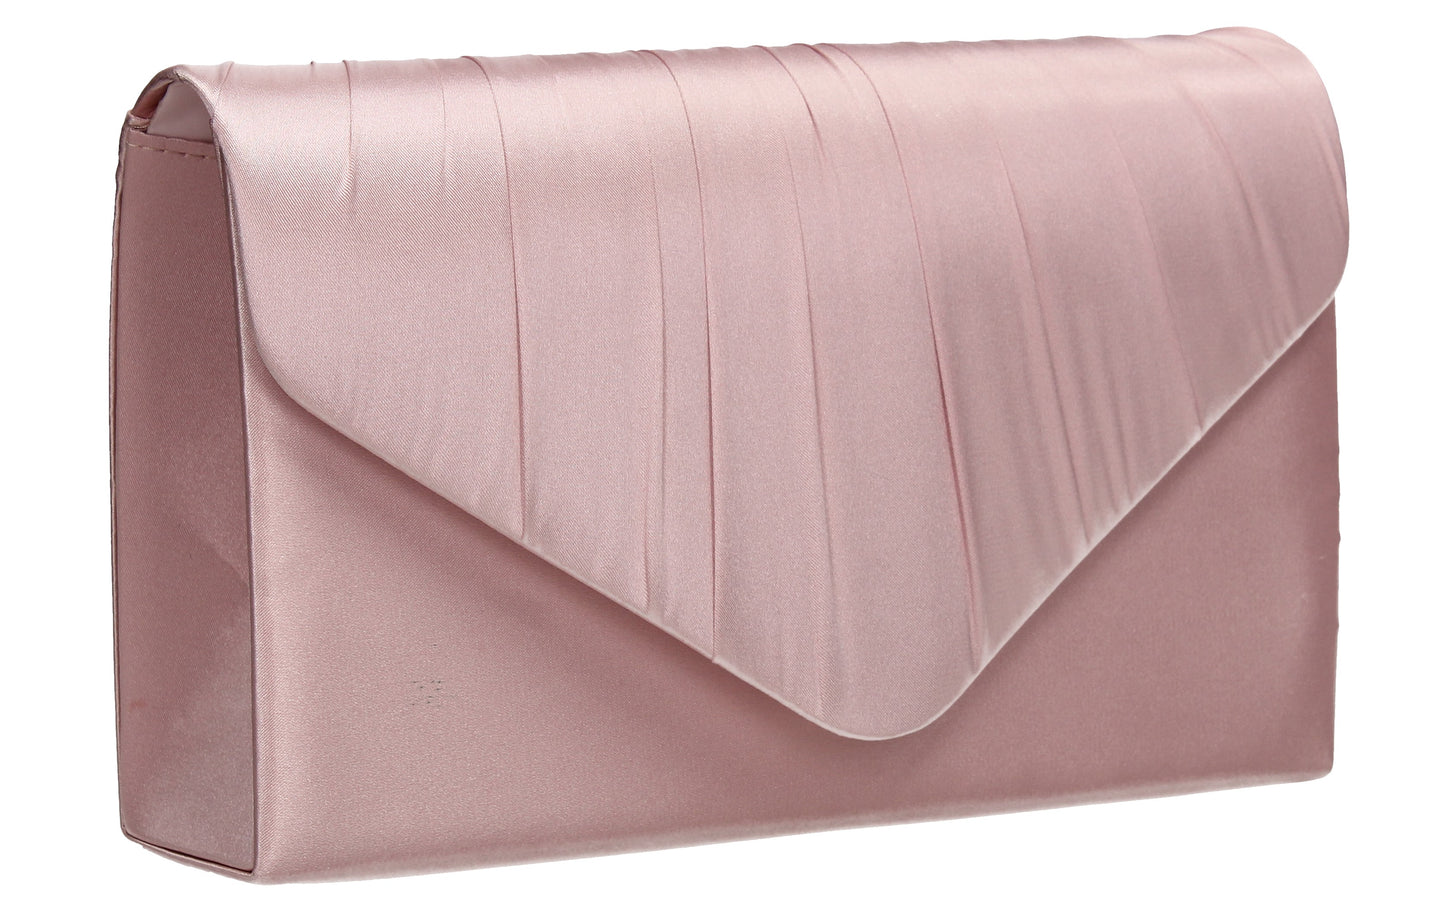 Chantel Beautiful Satin Envelope Clutch Bag Blush